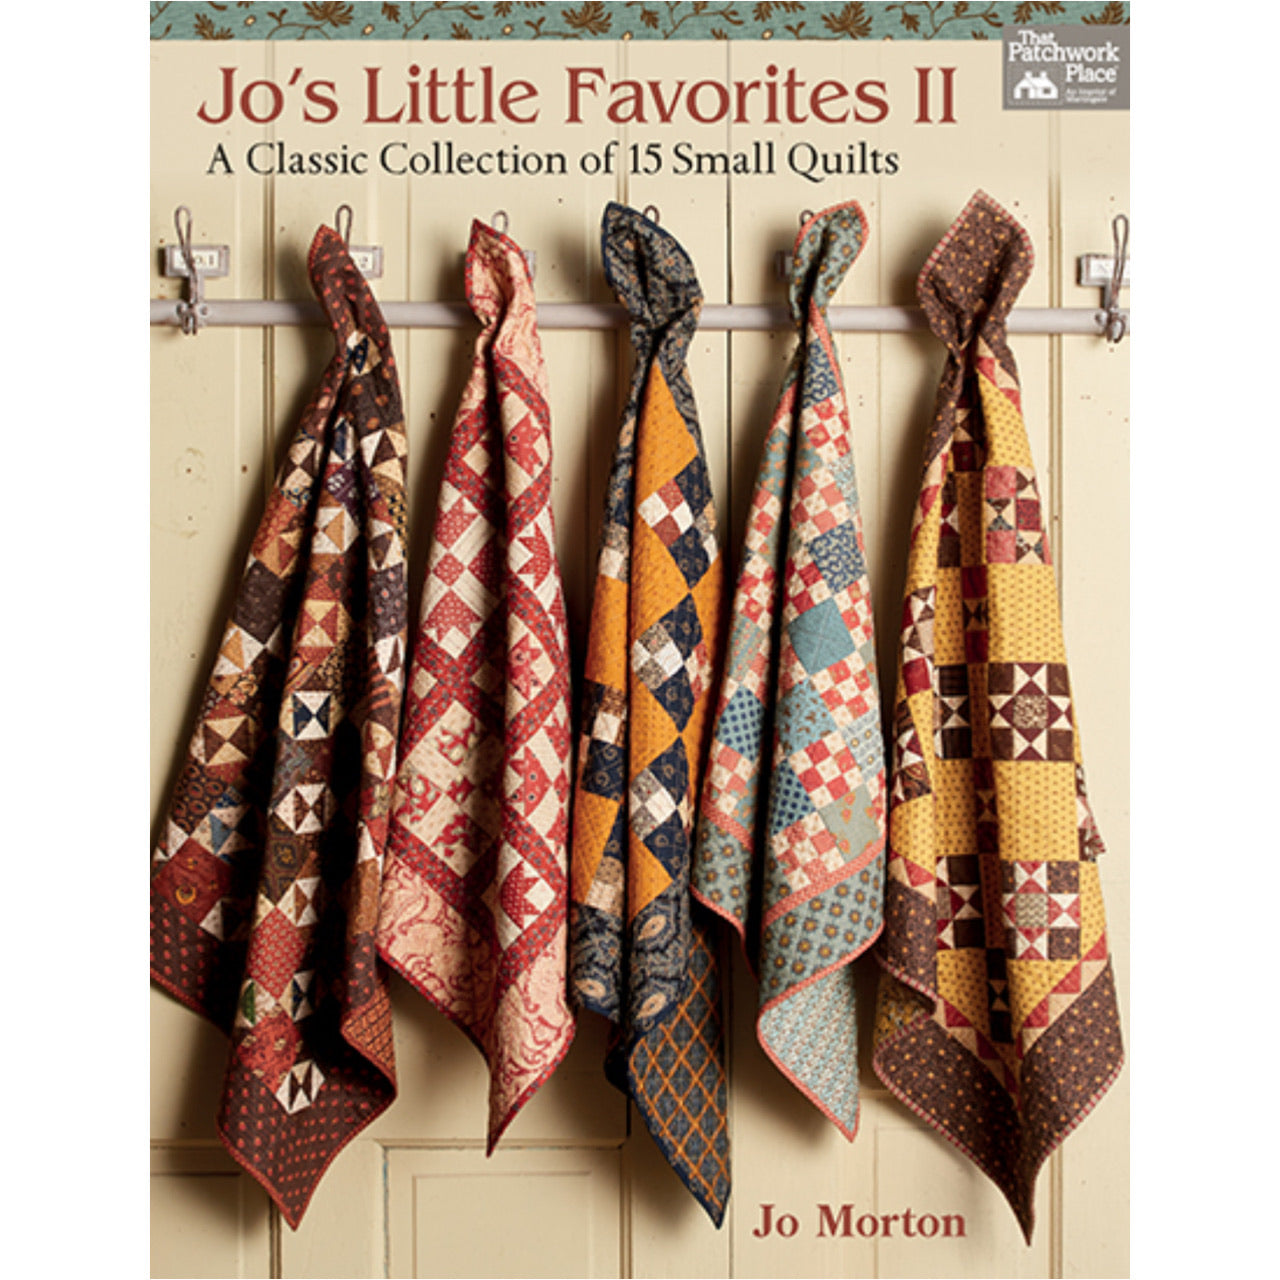 Jo's Little Favorites II by Jo Morton